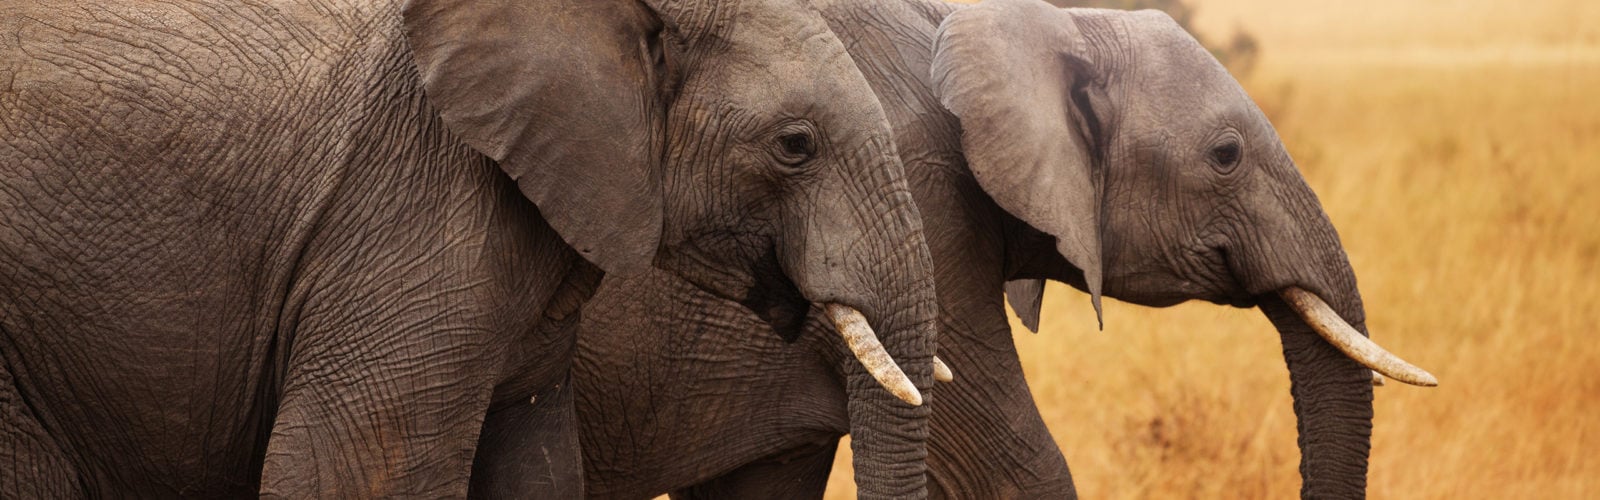 amboseli-elephants-kenya